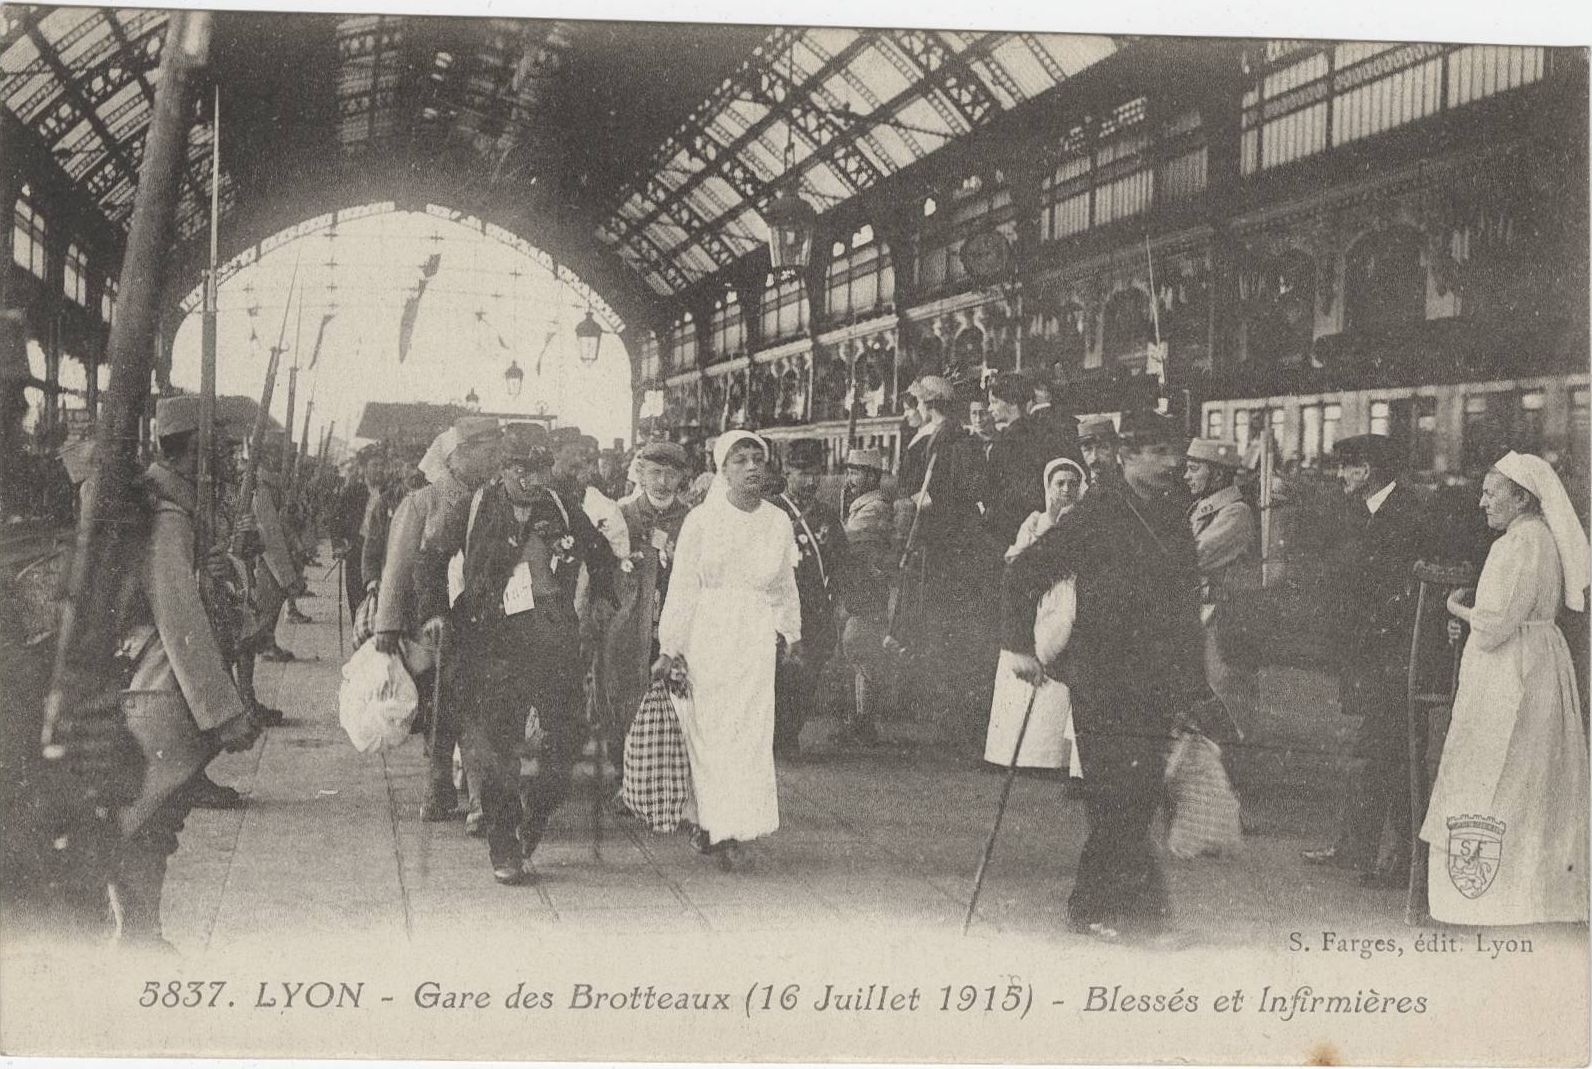 Lyon - Gare des Brotteaux (16 juillet 1915), blessés et infirmières : carte postale NB (1914-1918, cote : 4FI/4876)